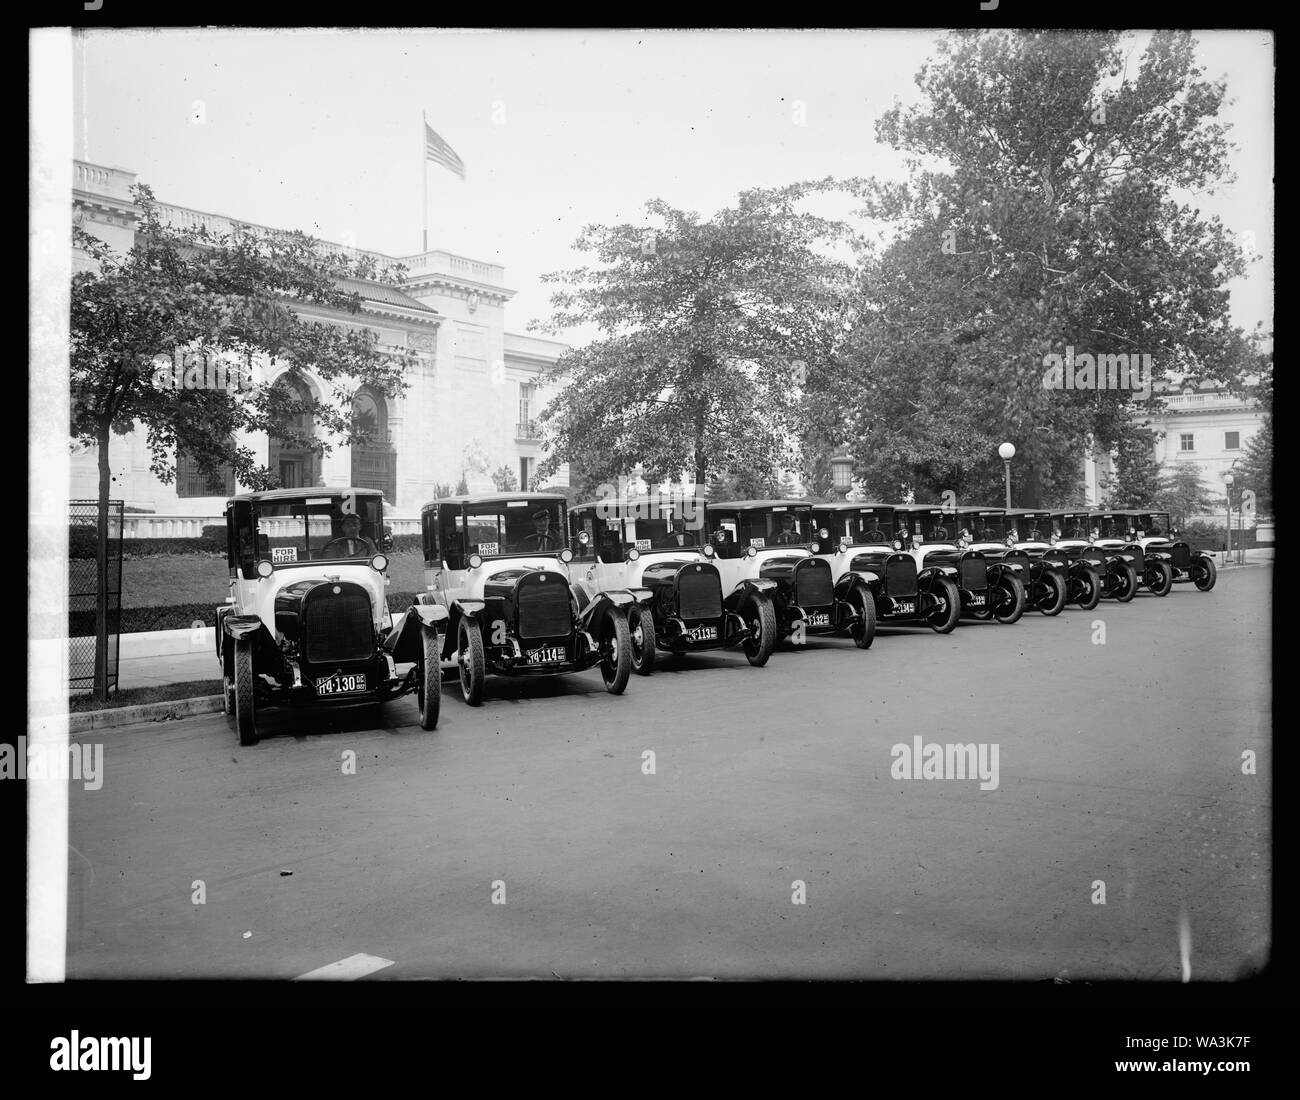 Black & White Taxis Stock Photo - Alamy